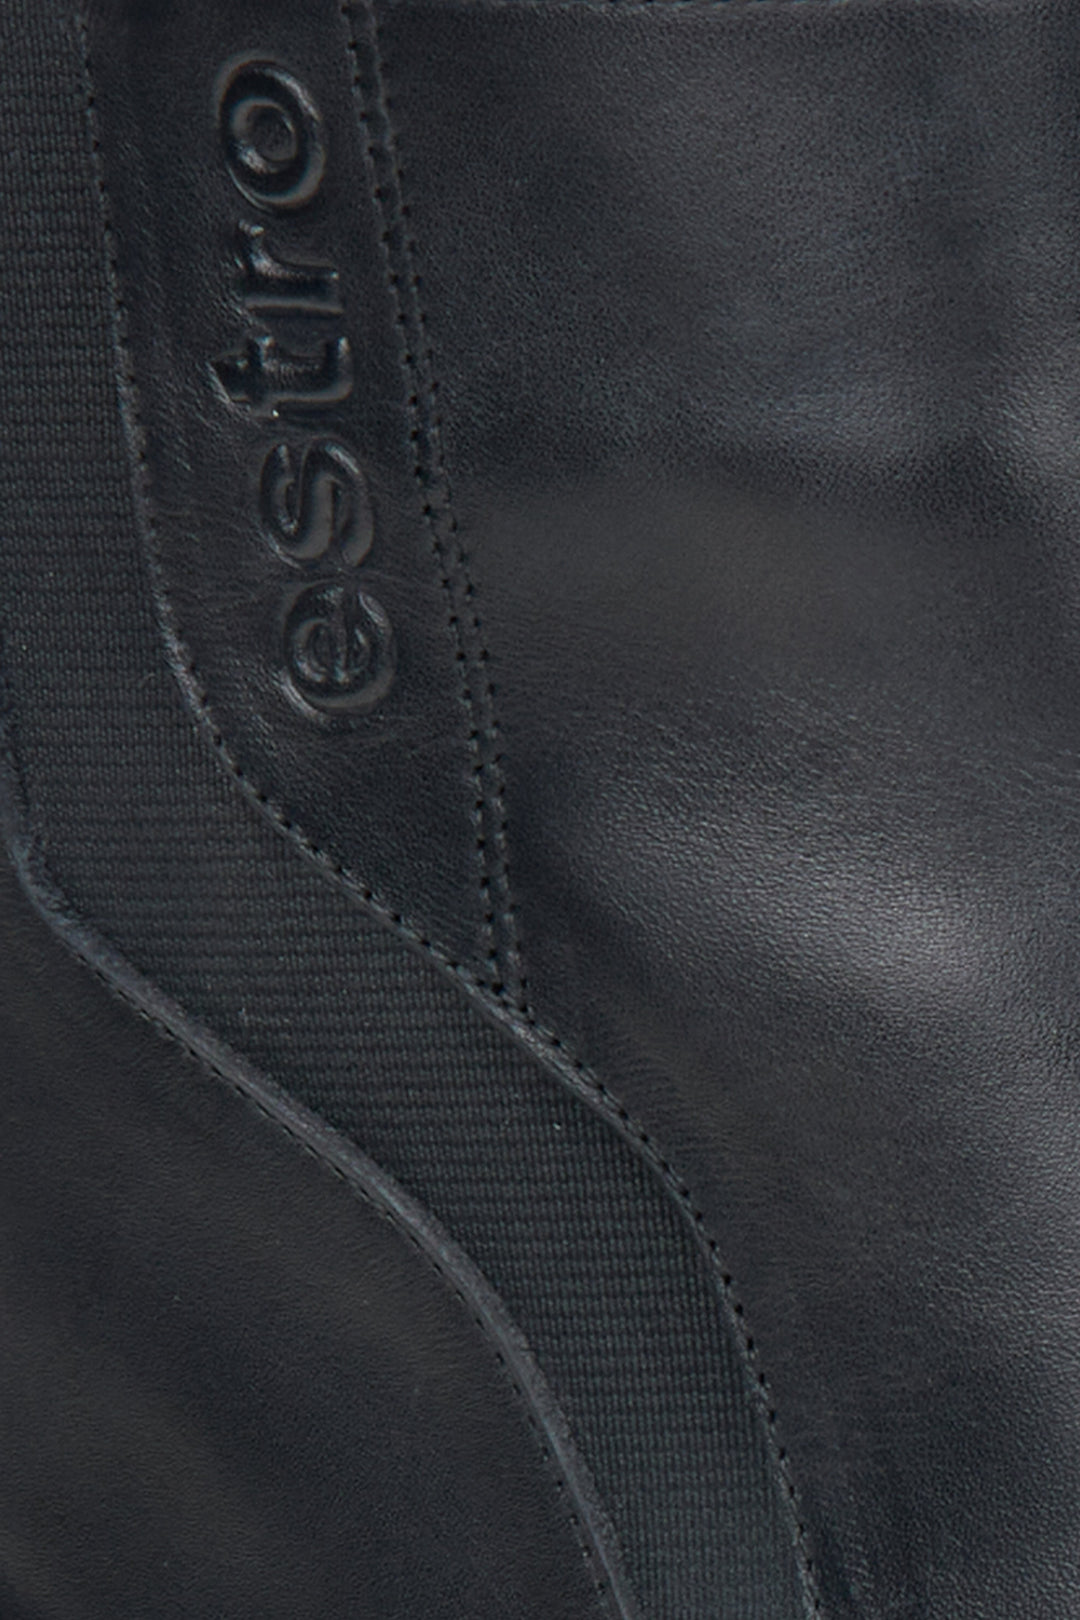 Czarne skórzane botki damskie w kolorze czarnym Estro - zbliżenie na detale.